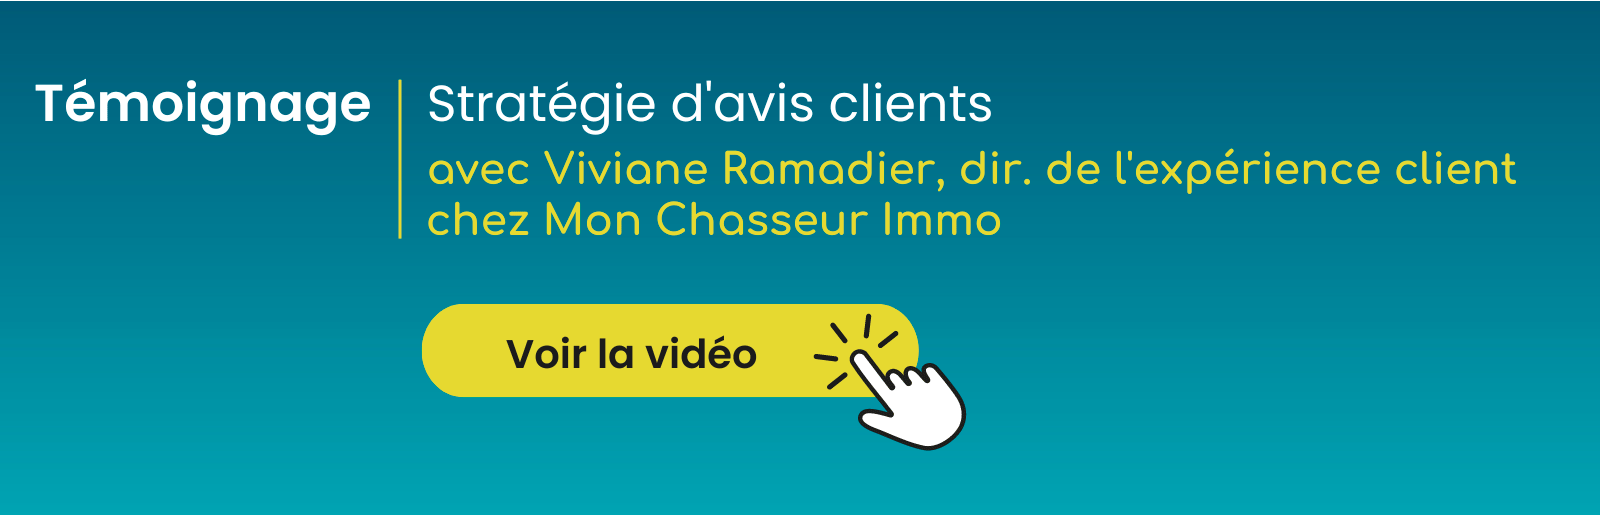 Témoignage vidéo Mon Chasseur Immo - Stratégie d'avis client